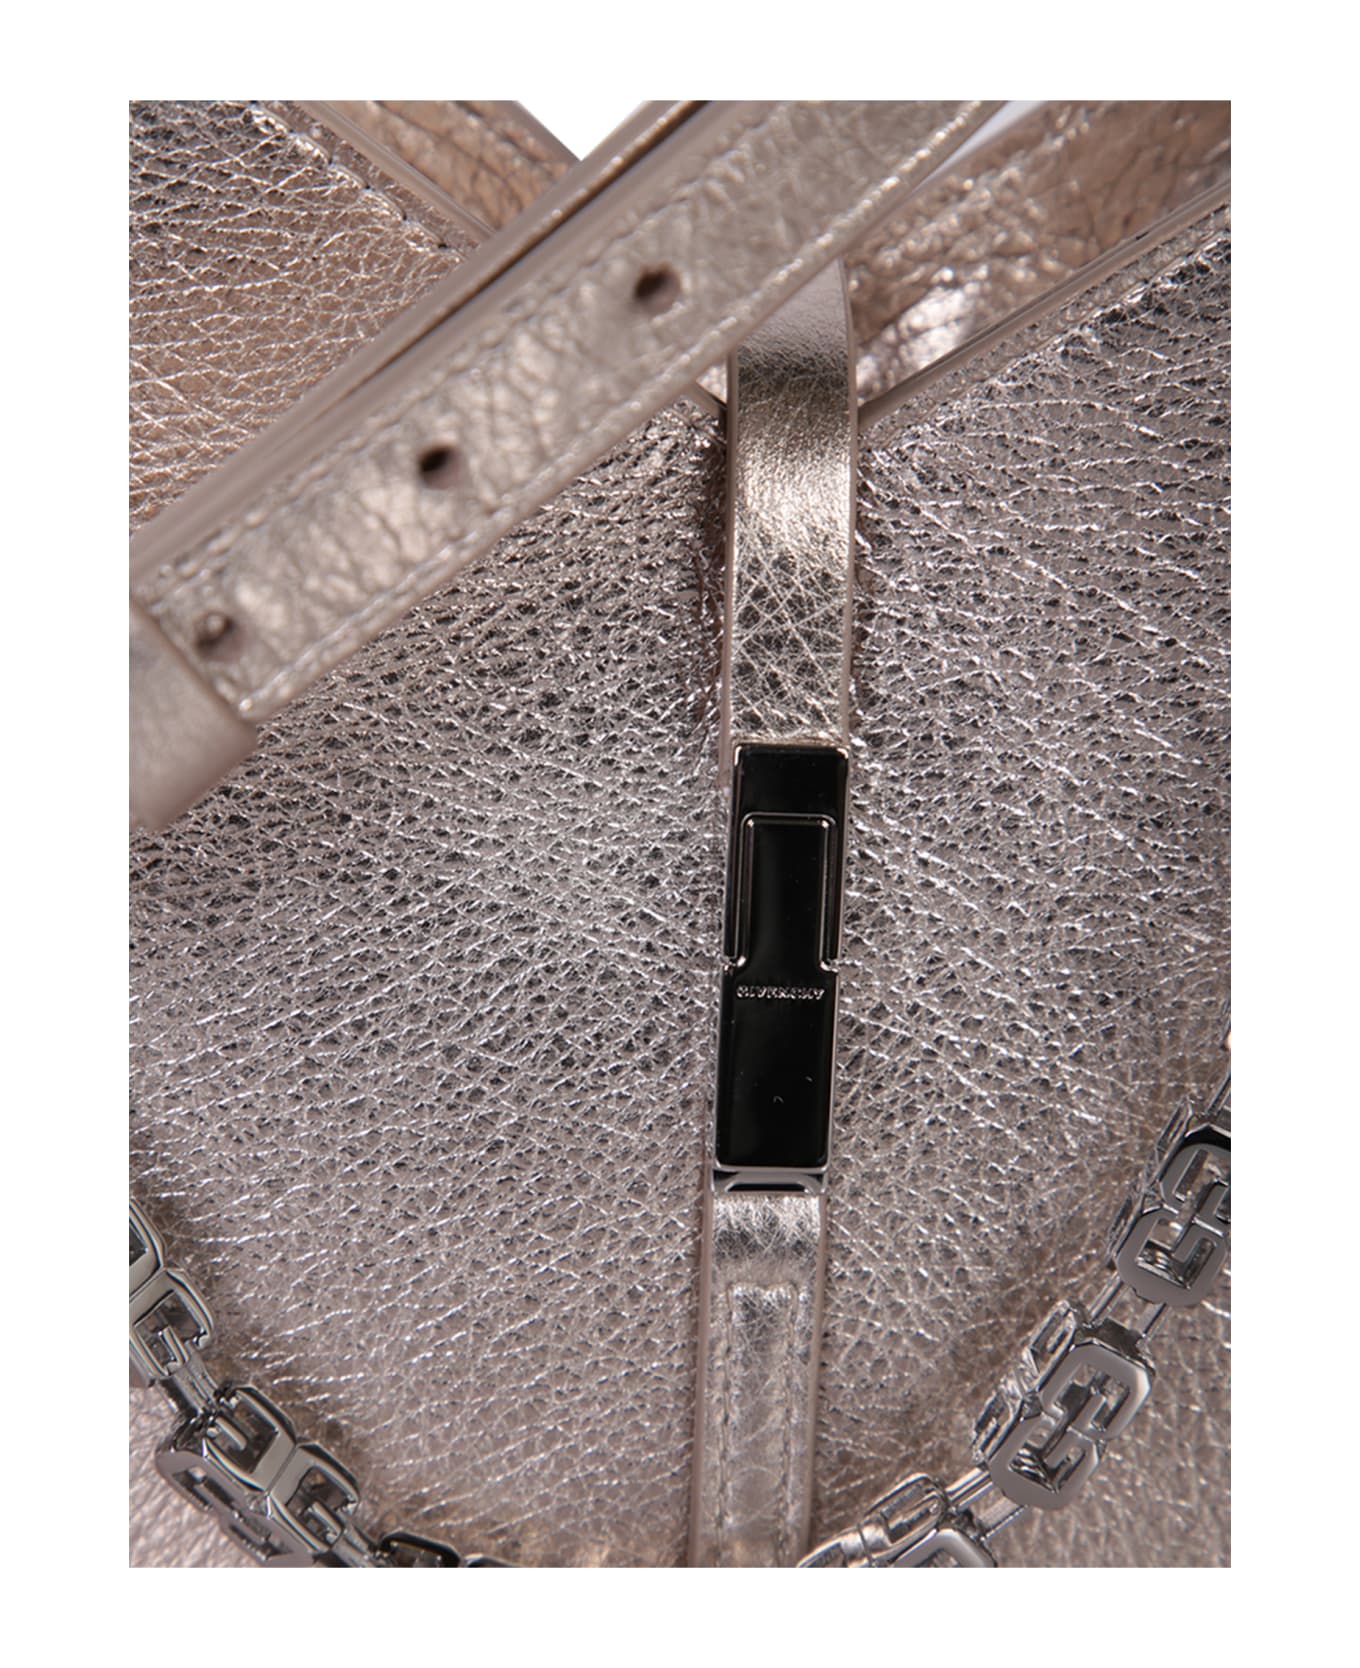 Givenchy Cut-out Shoulder Bag - Metallic ショルダーバッグ